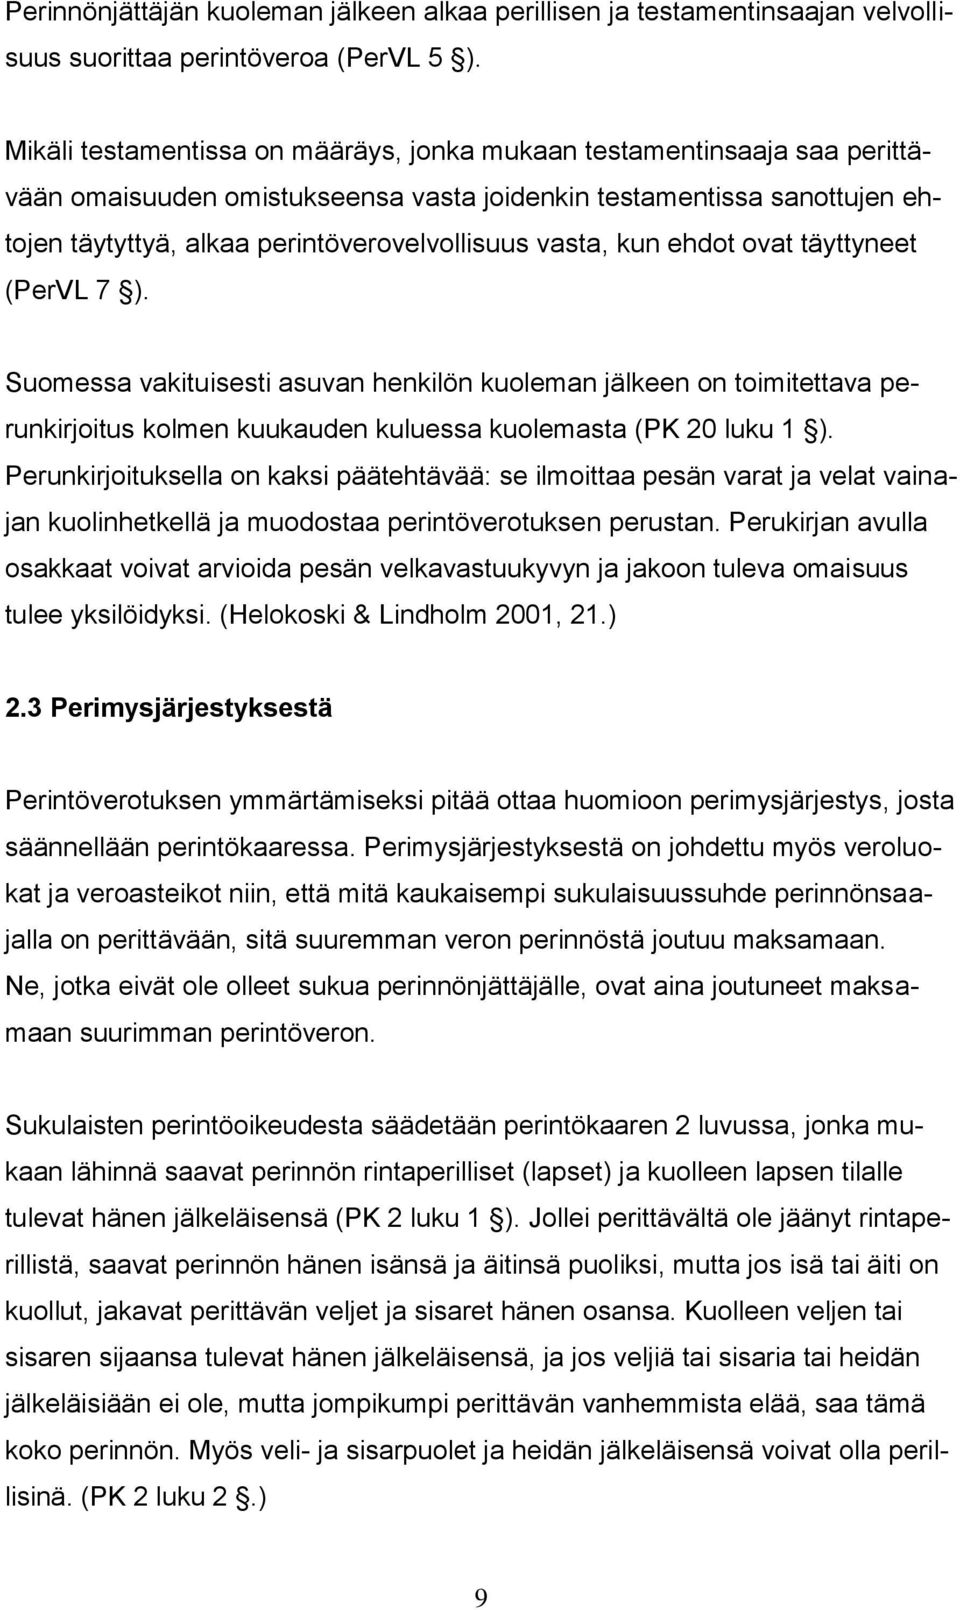 vasta, kun ehdot ovat täyttyneet (PerVL 7 ). Suomessa vakituisesti asuvan henkilön kuoleman jälkeen on toimitettava perunkirjoitus kolmen kuukauden kuluessa kuolemasta (PK 20 luku 1 ).